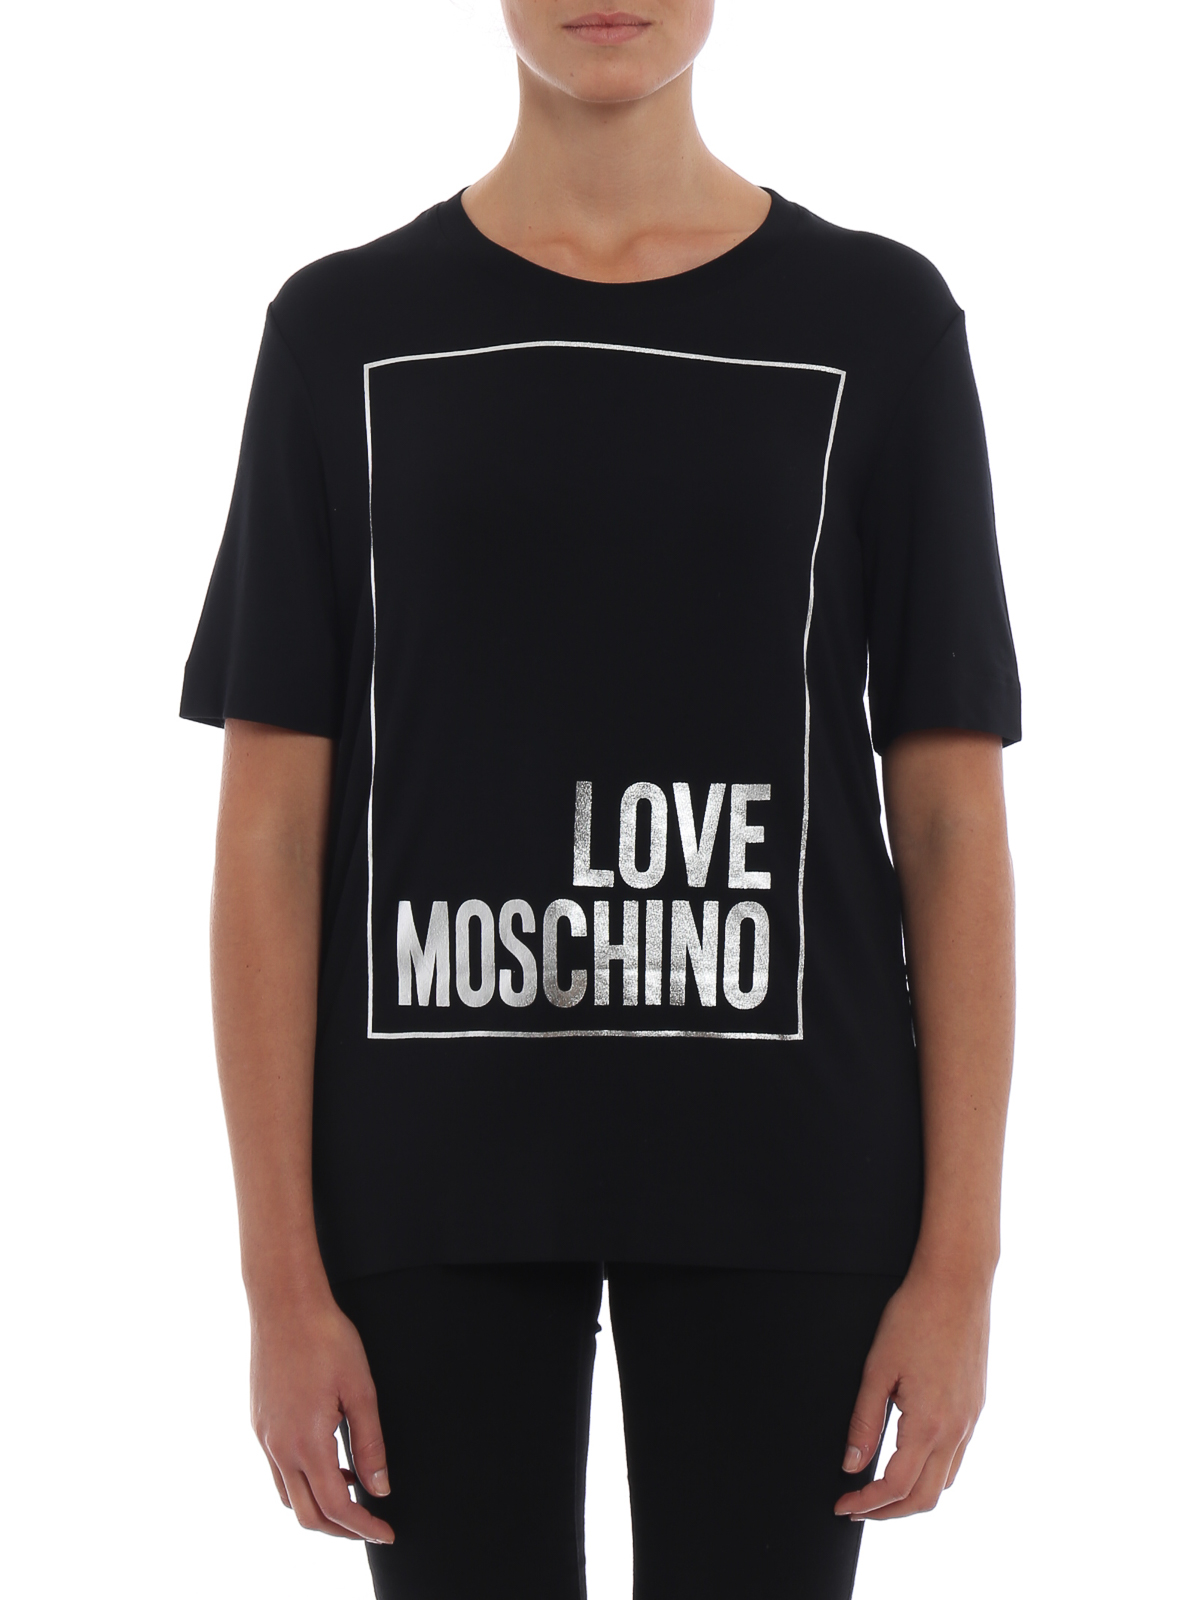 Tシャツ Love Moschino - Tシャツ - 黒 - W4F1564E1938C74